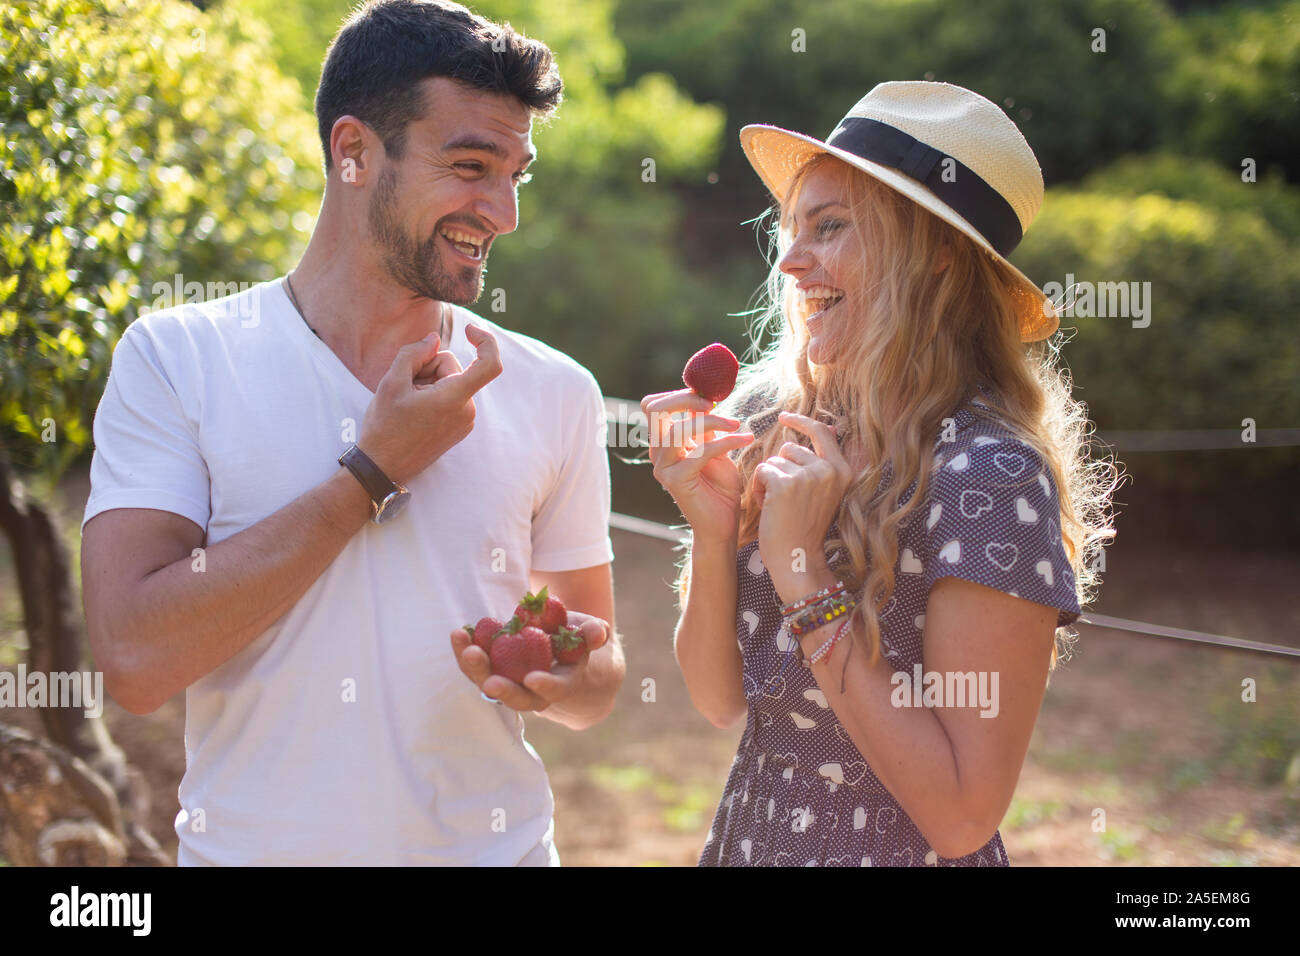 Glückliche junge temperamentvolle paar Scherzen auf Picknick in der Natur Stockfoto